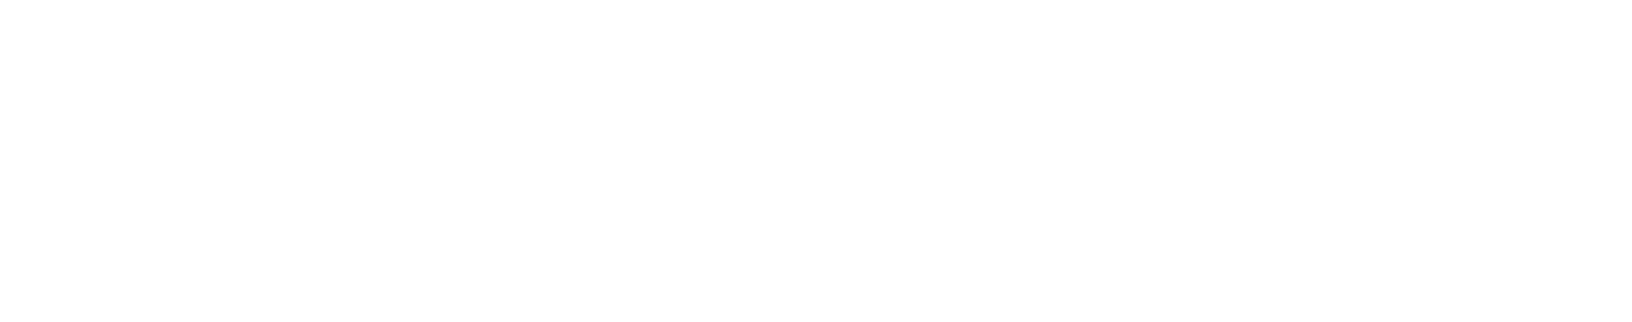 Microverse logo 3